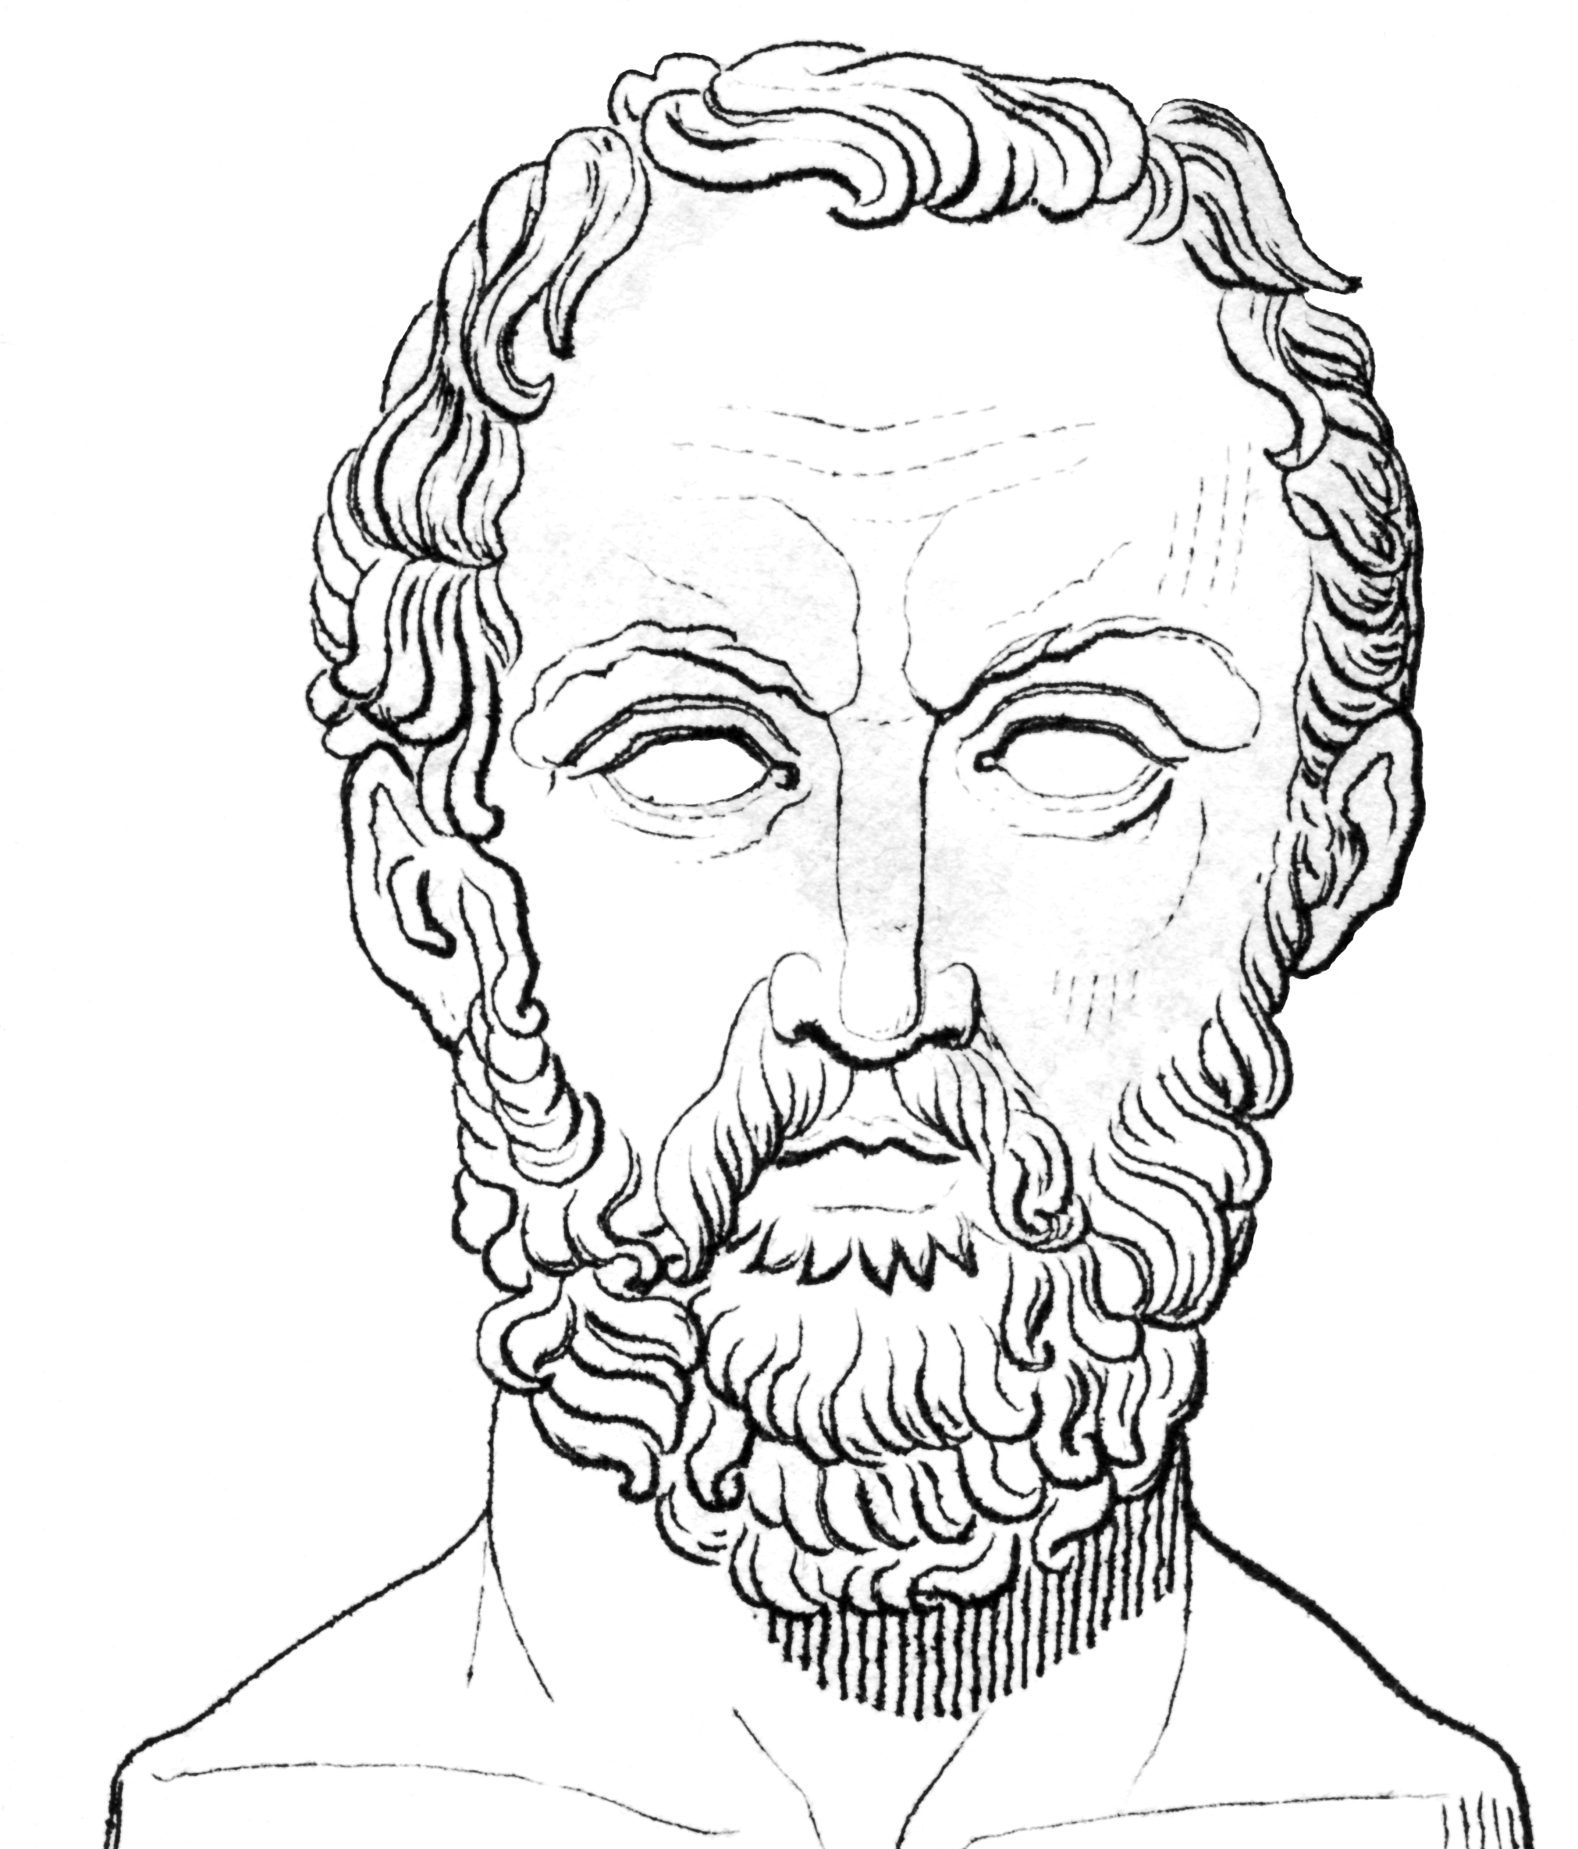 Kreikkalainen Thukydides kirjoitti peloponnesolais­sodista. Kuuluisassa katkelmassa voimakas Ateena pakottaa pienen Meloksen saaren tahtoonsa.